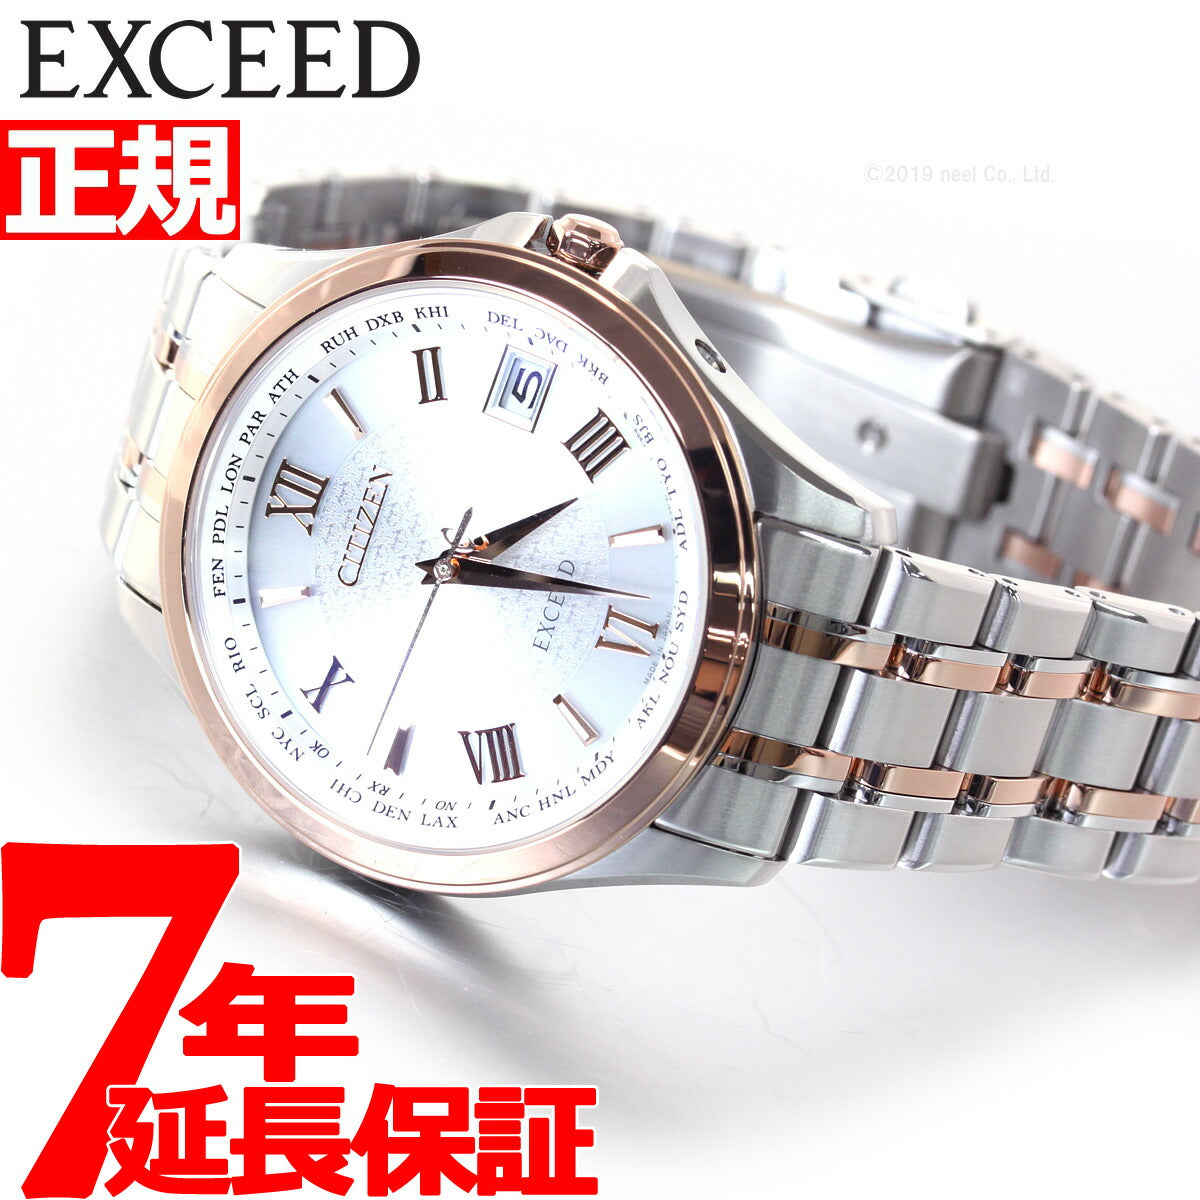 シチズン CITIZEN 腕時計 メンズ CB1084-51A エクシード EXCEED エコ・ドライブ電波（H149） シルバーxシルバー/ピンクゴールド アナログ表示